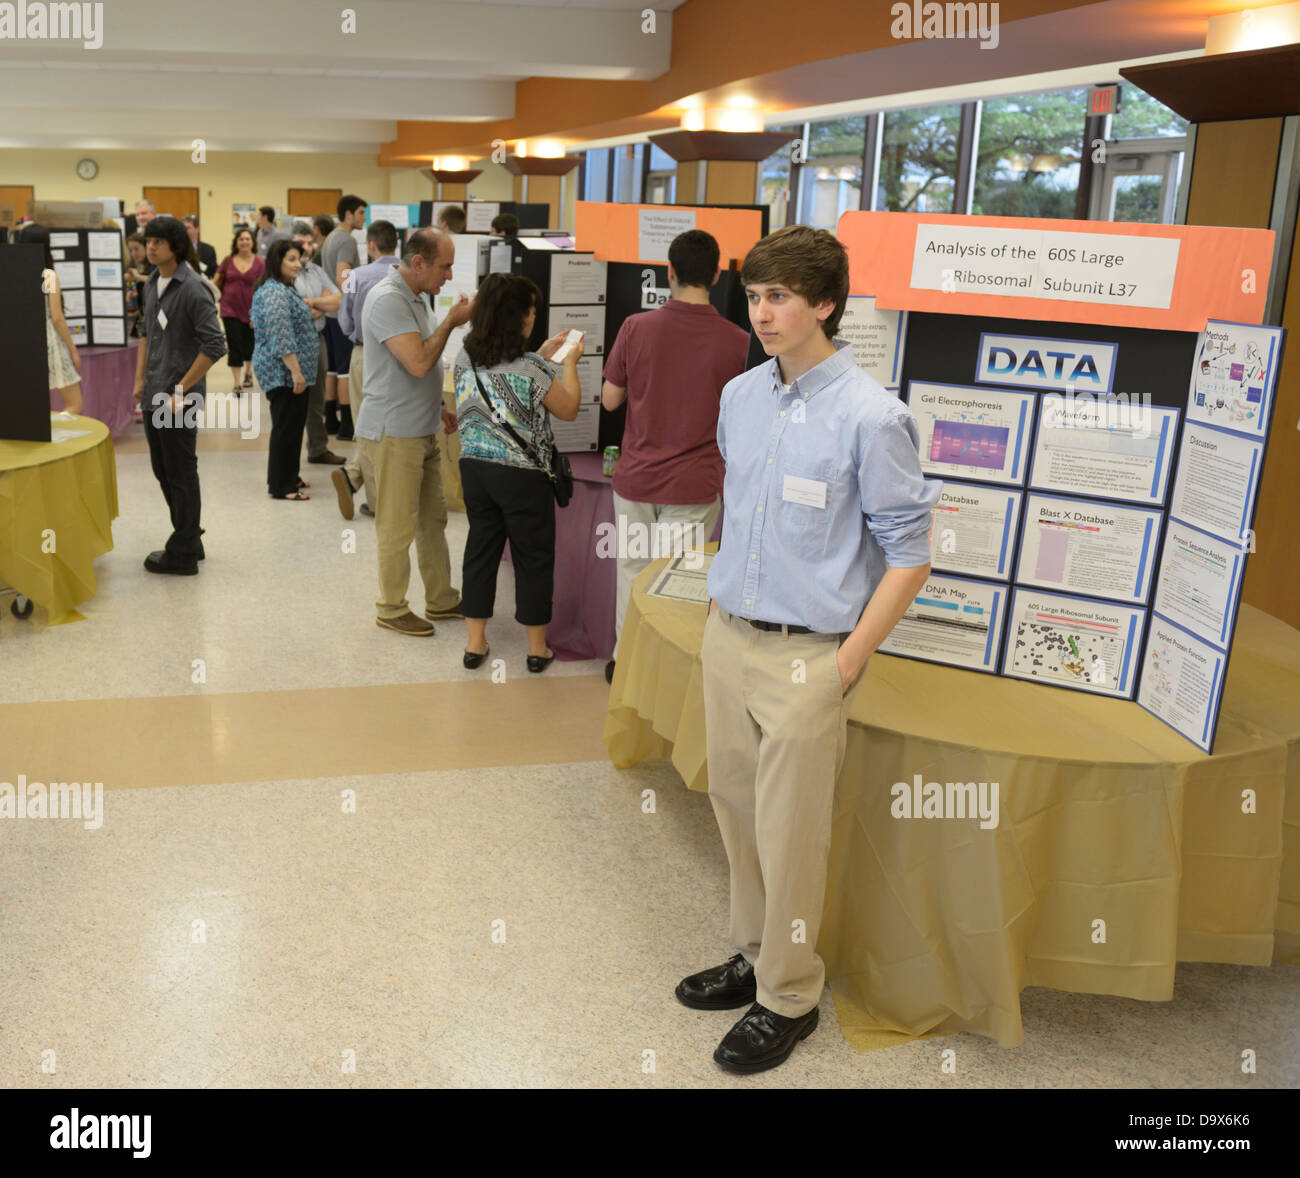 Les élèves d'afficher et d'expliquer les posters de leurs projets de recherche scientifique à un symposium scientifique/ science fair Banque D'Images